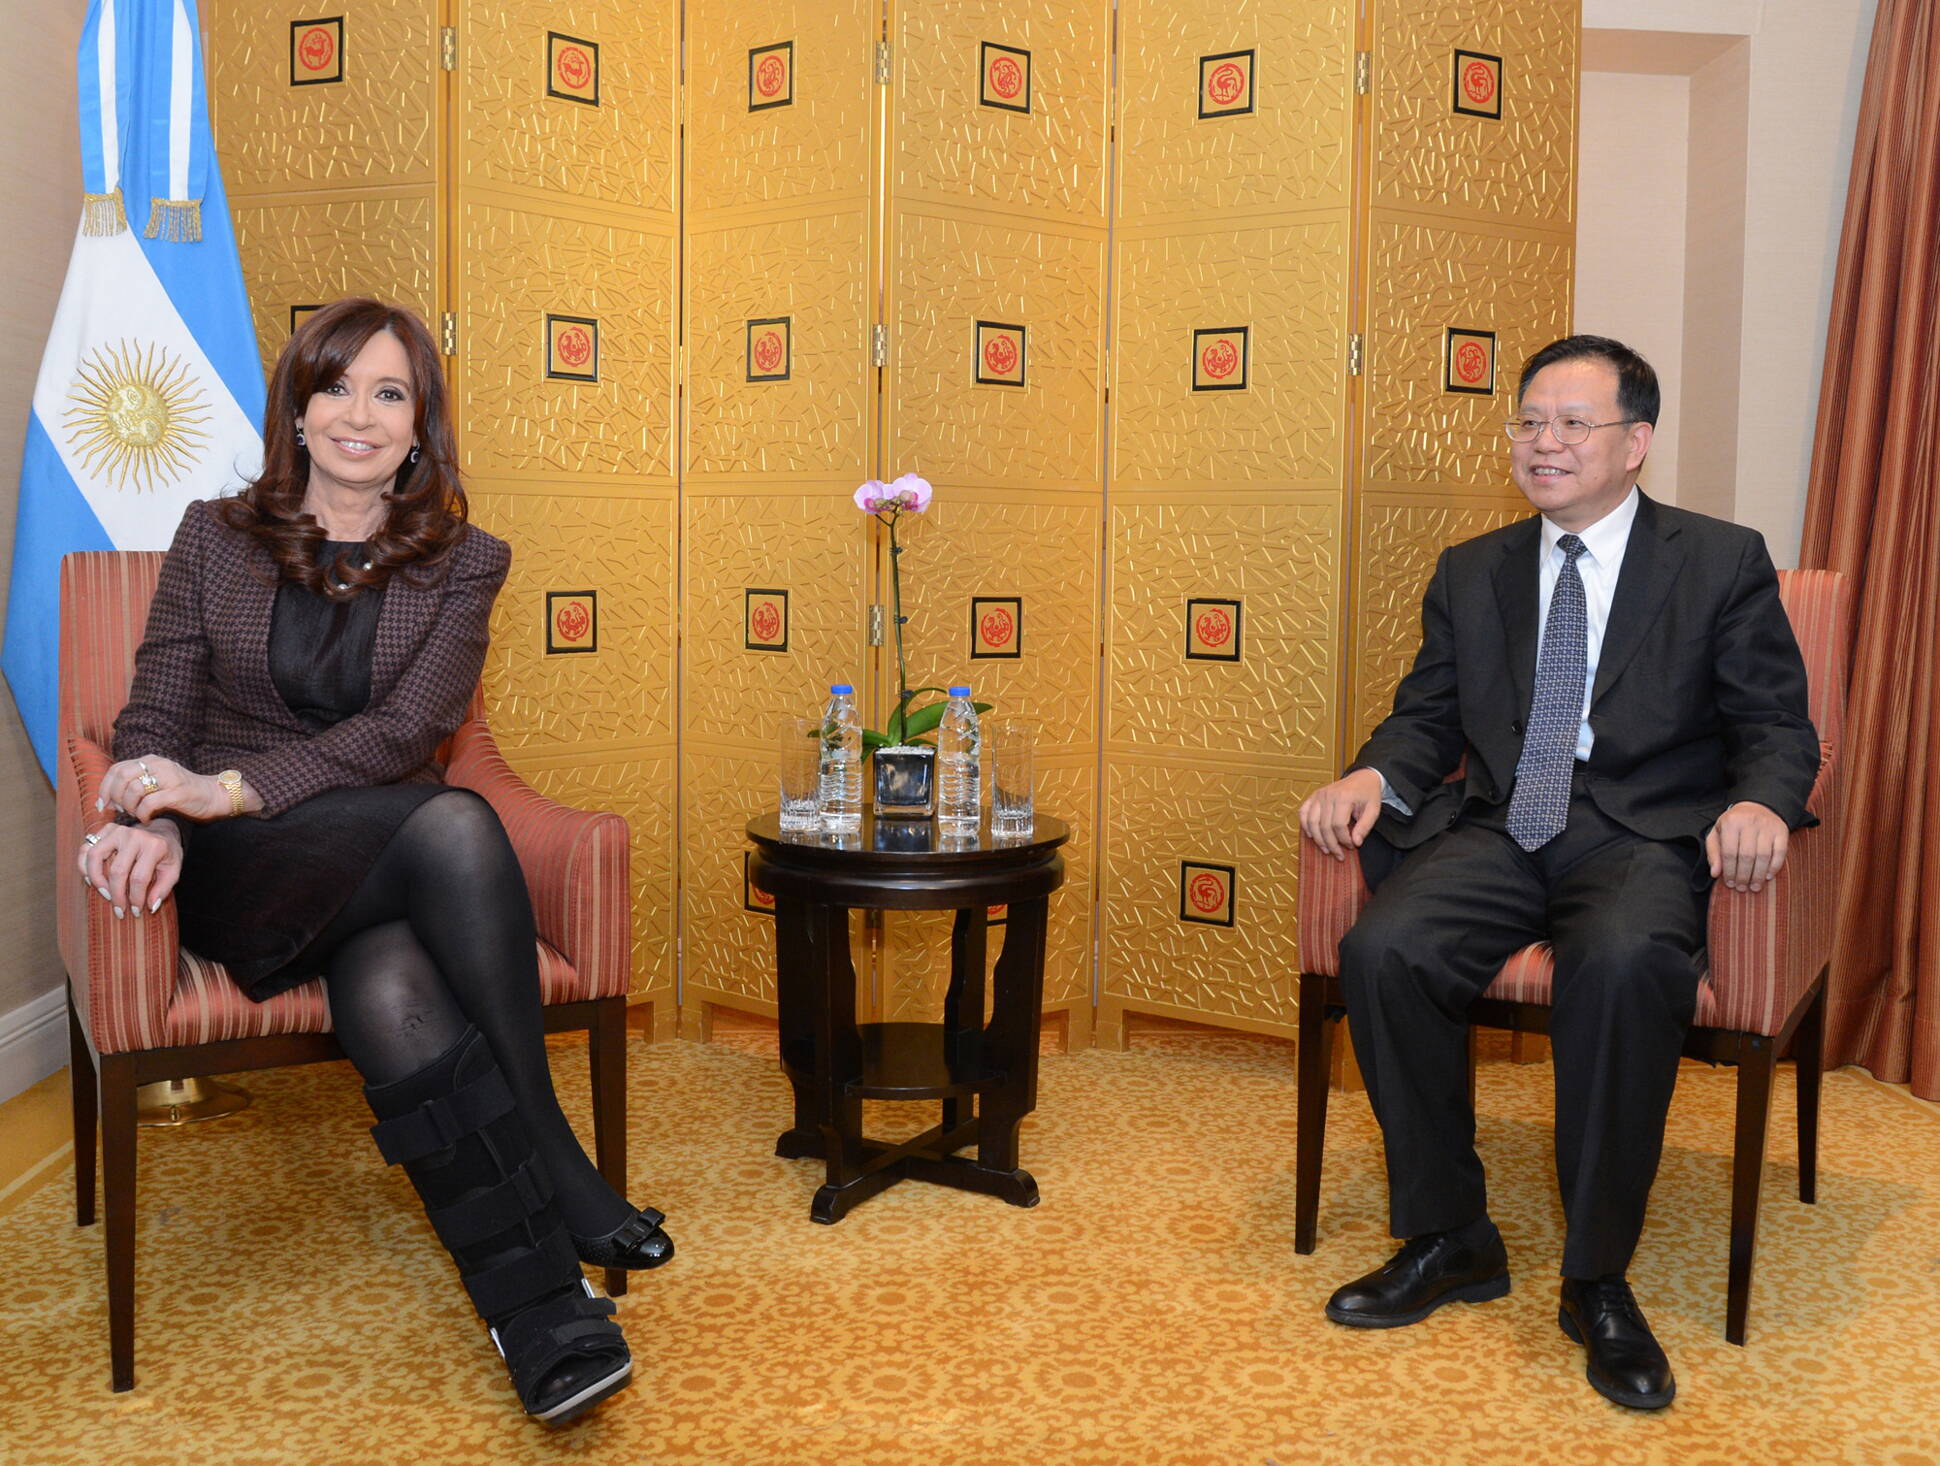 La jefa de Estado se reunió con el presidente de China Energy, Wang Jianping